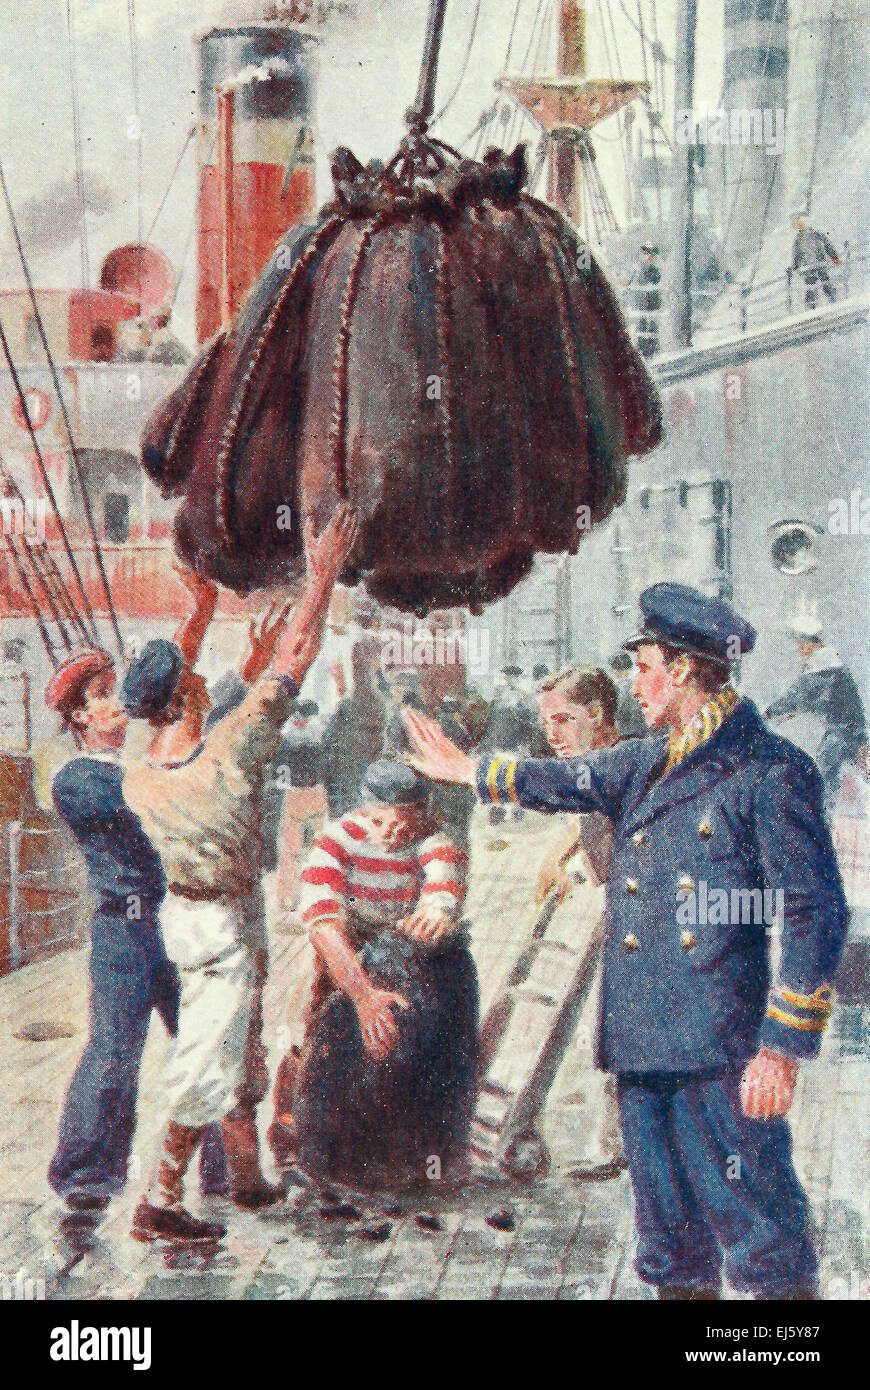 Coaling a ship - British Royal Navy - Bluejackets - WWI Stock Photo